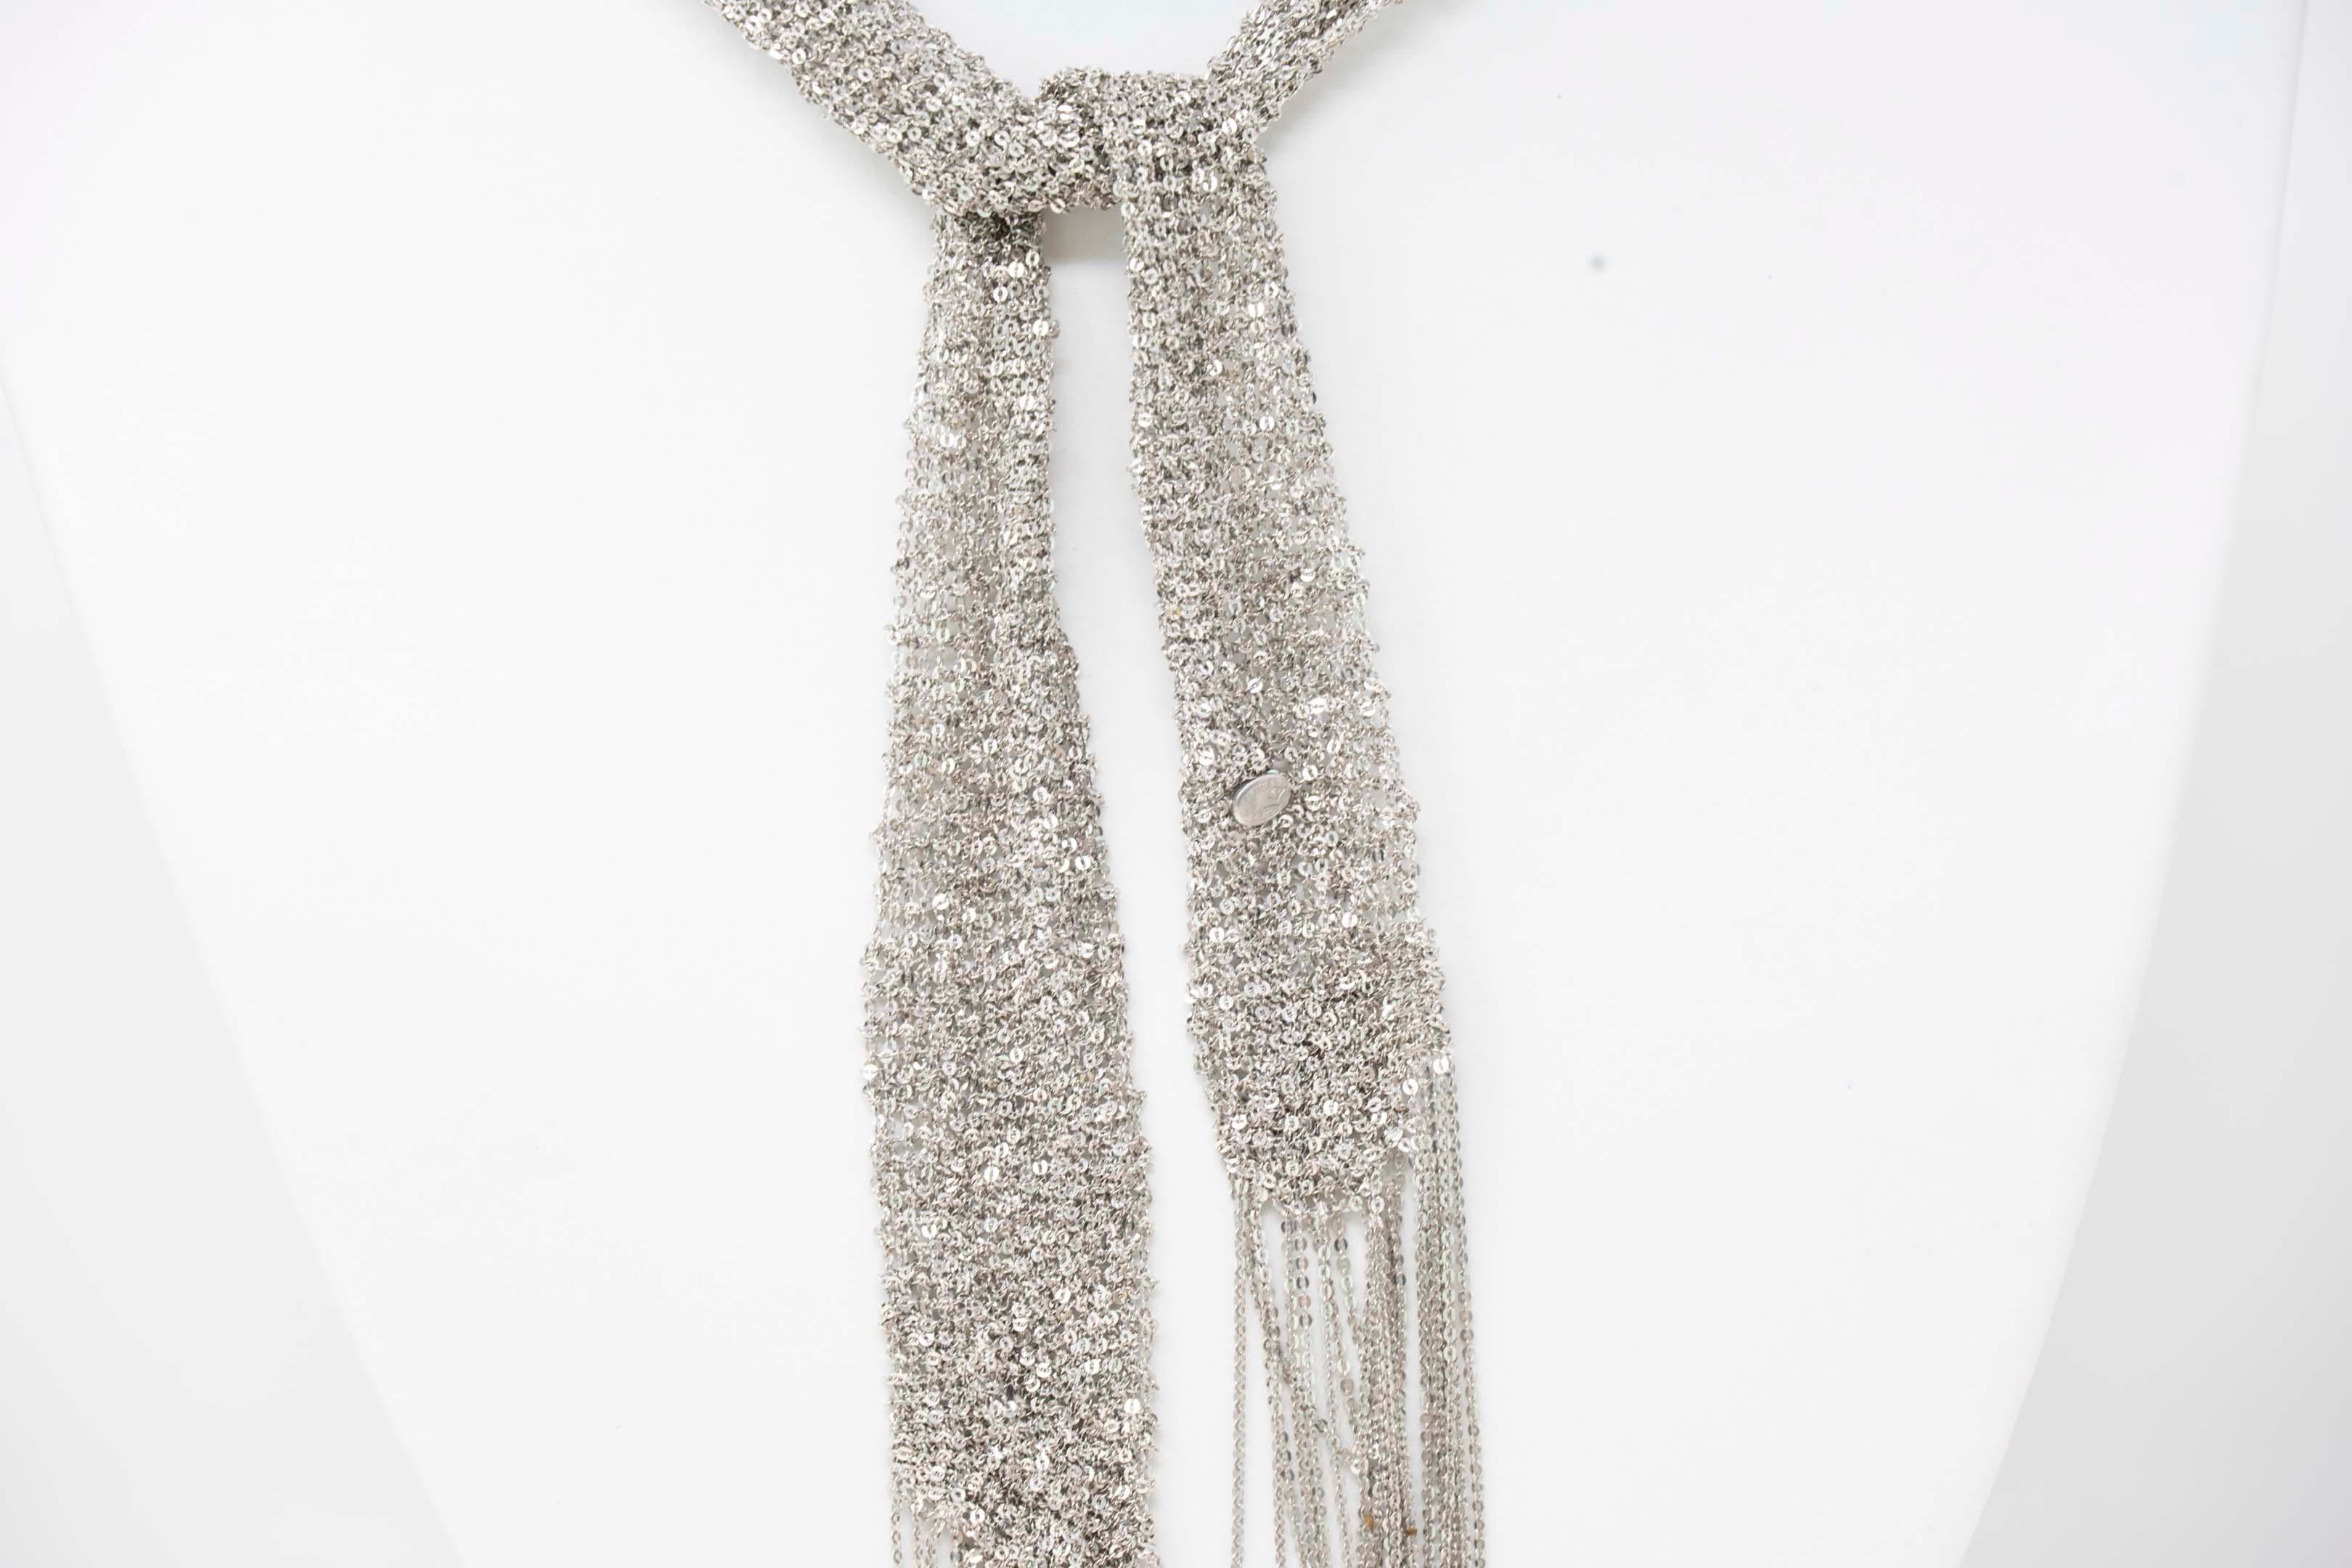 Zeitgenössischer handgewebter Netzschal aus oxidiertem Silber von Stevie Wren. Der Schal ist in ausgezeichnetem Zustand, misst 37 Zoll lang x 1 1/4 Zoll breit. Gestempelt 925, Italien und Monogramm S.
